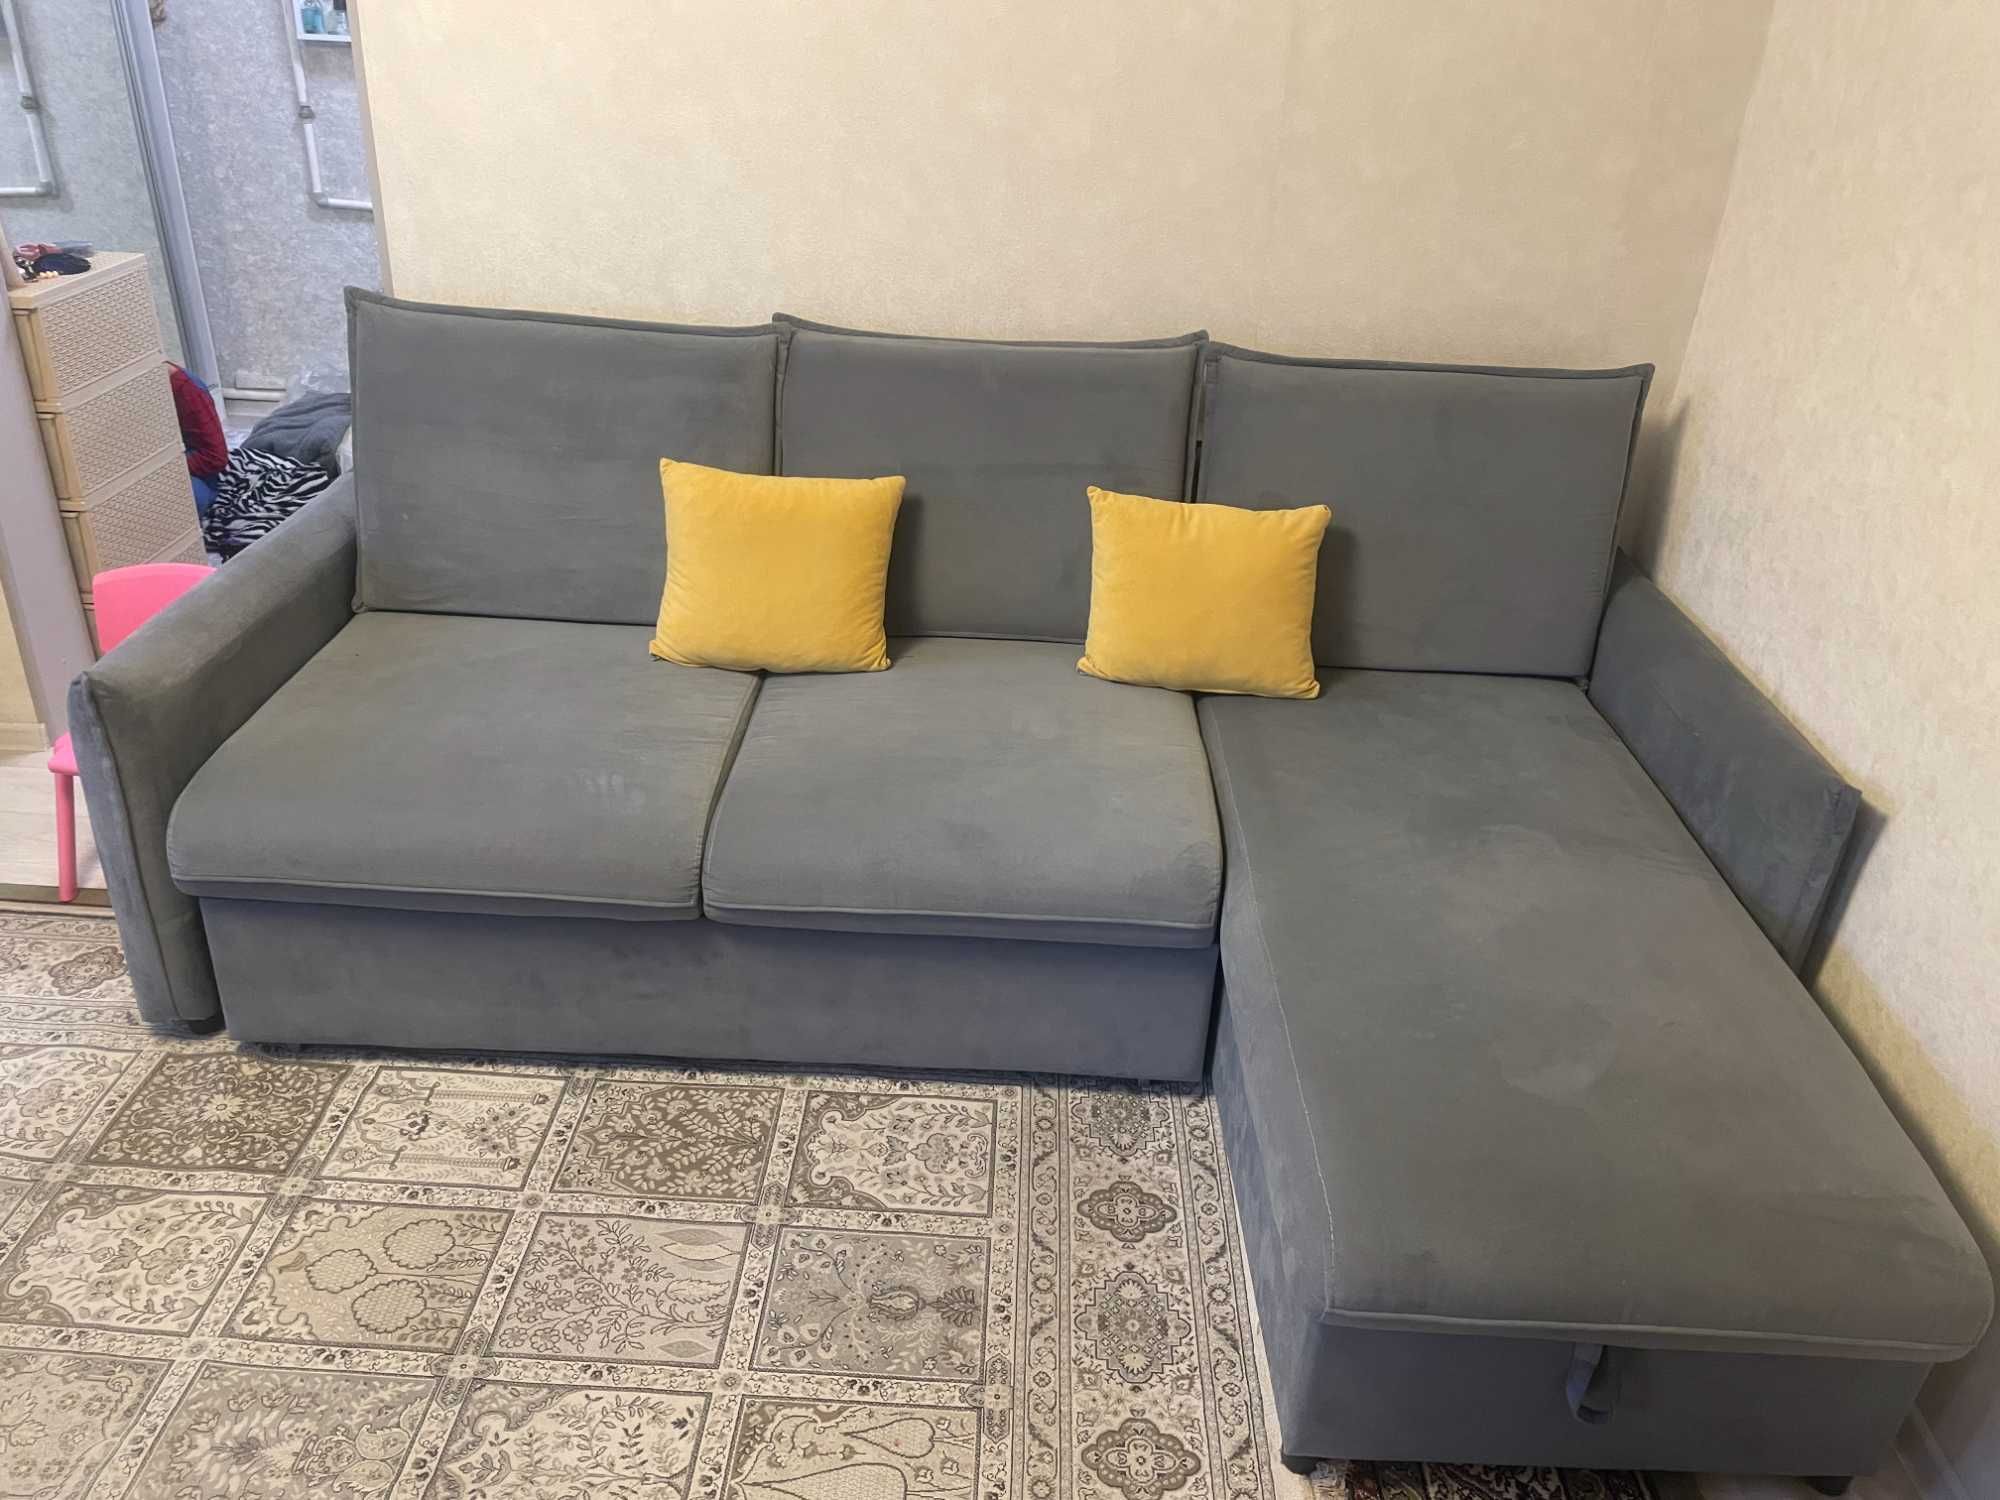 Угловой диван по низкой цене